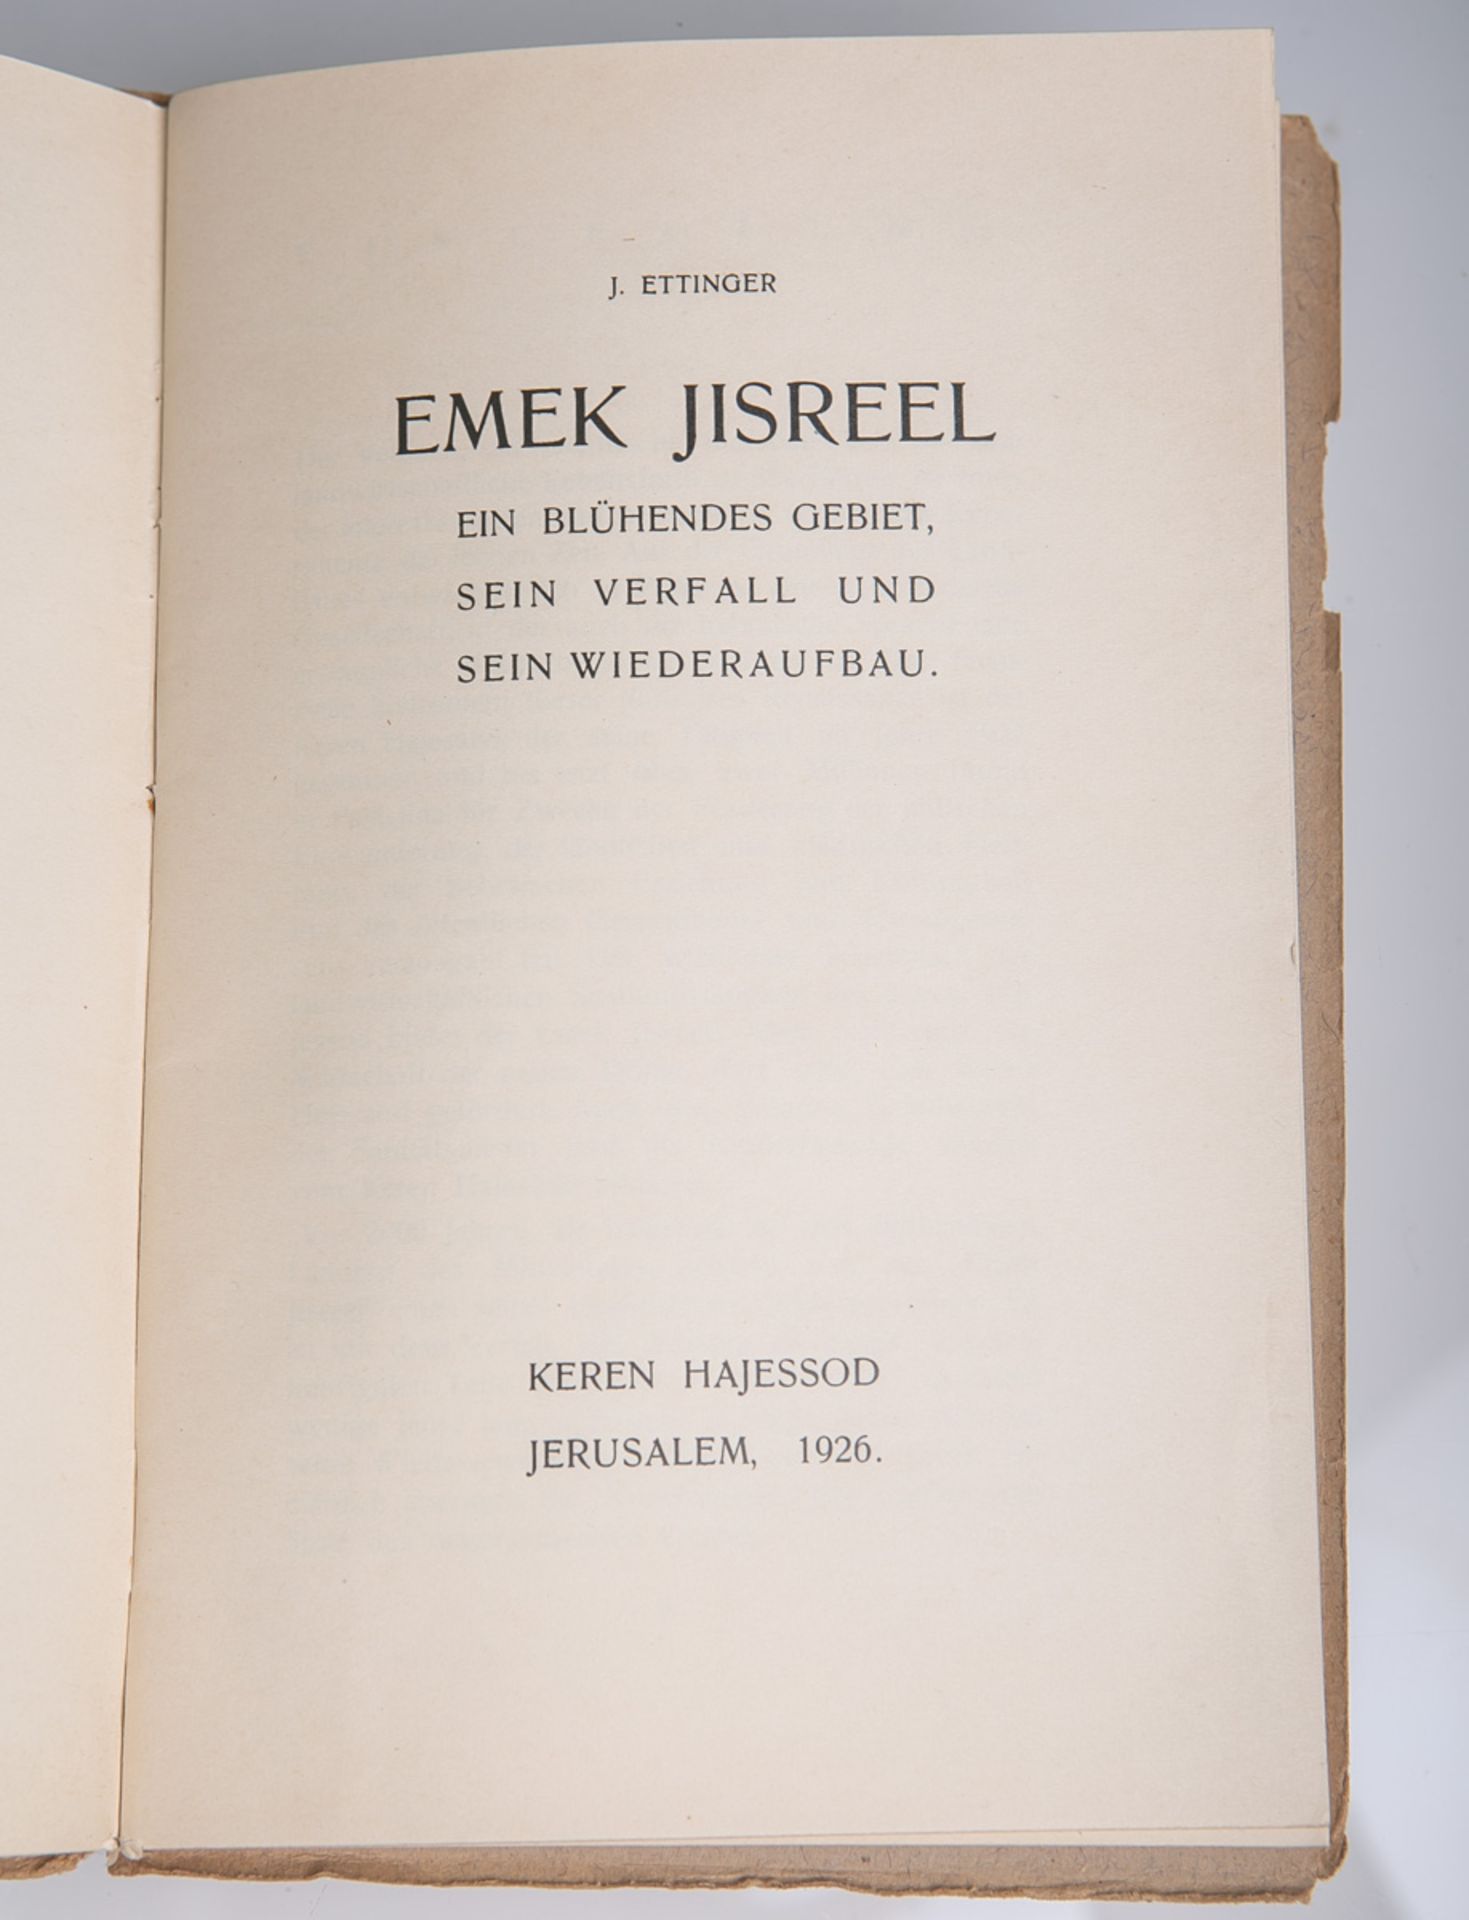 Ettinger, J., "Emek Jisreel. Ein blühendes Gebiet, sein Verfall und sein Wiederaufbau" - Image 2 of 2